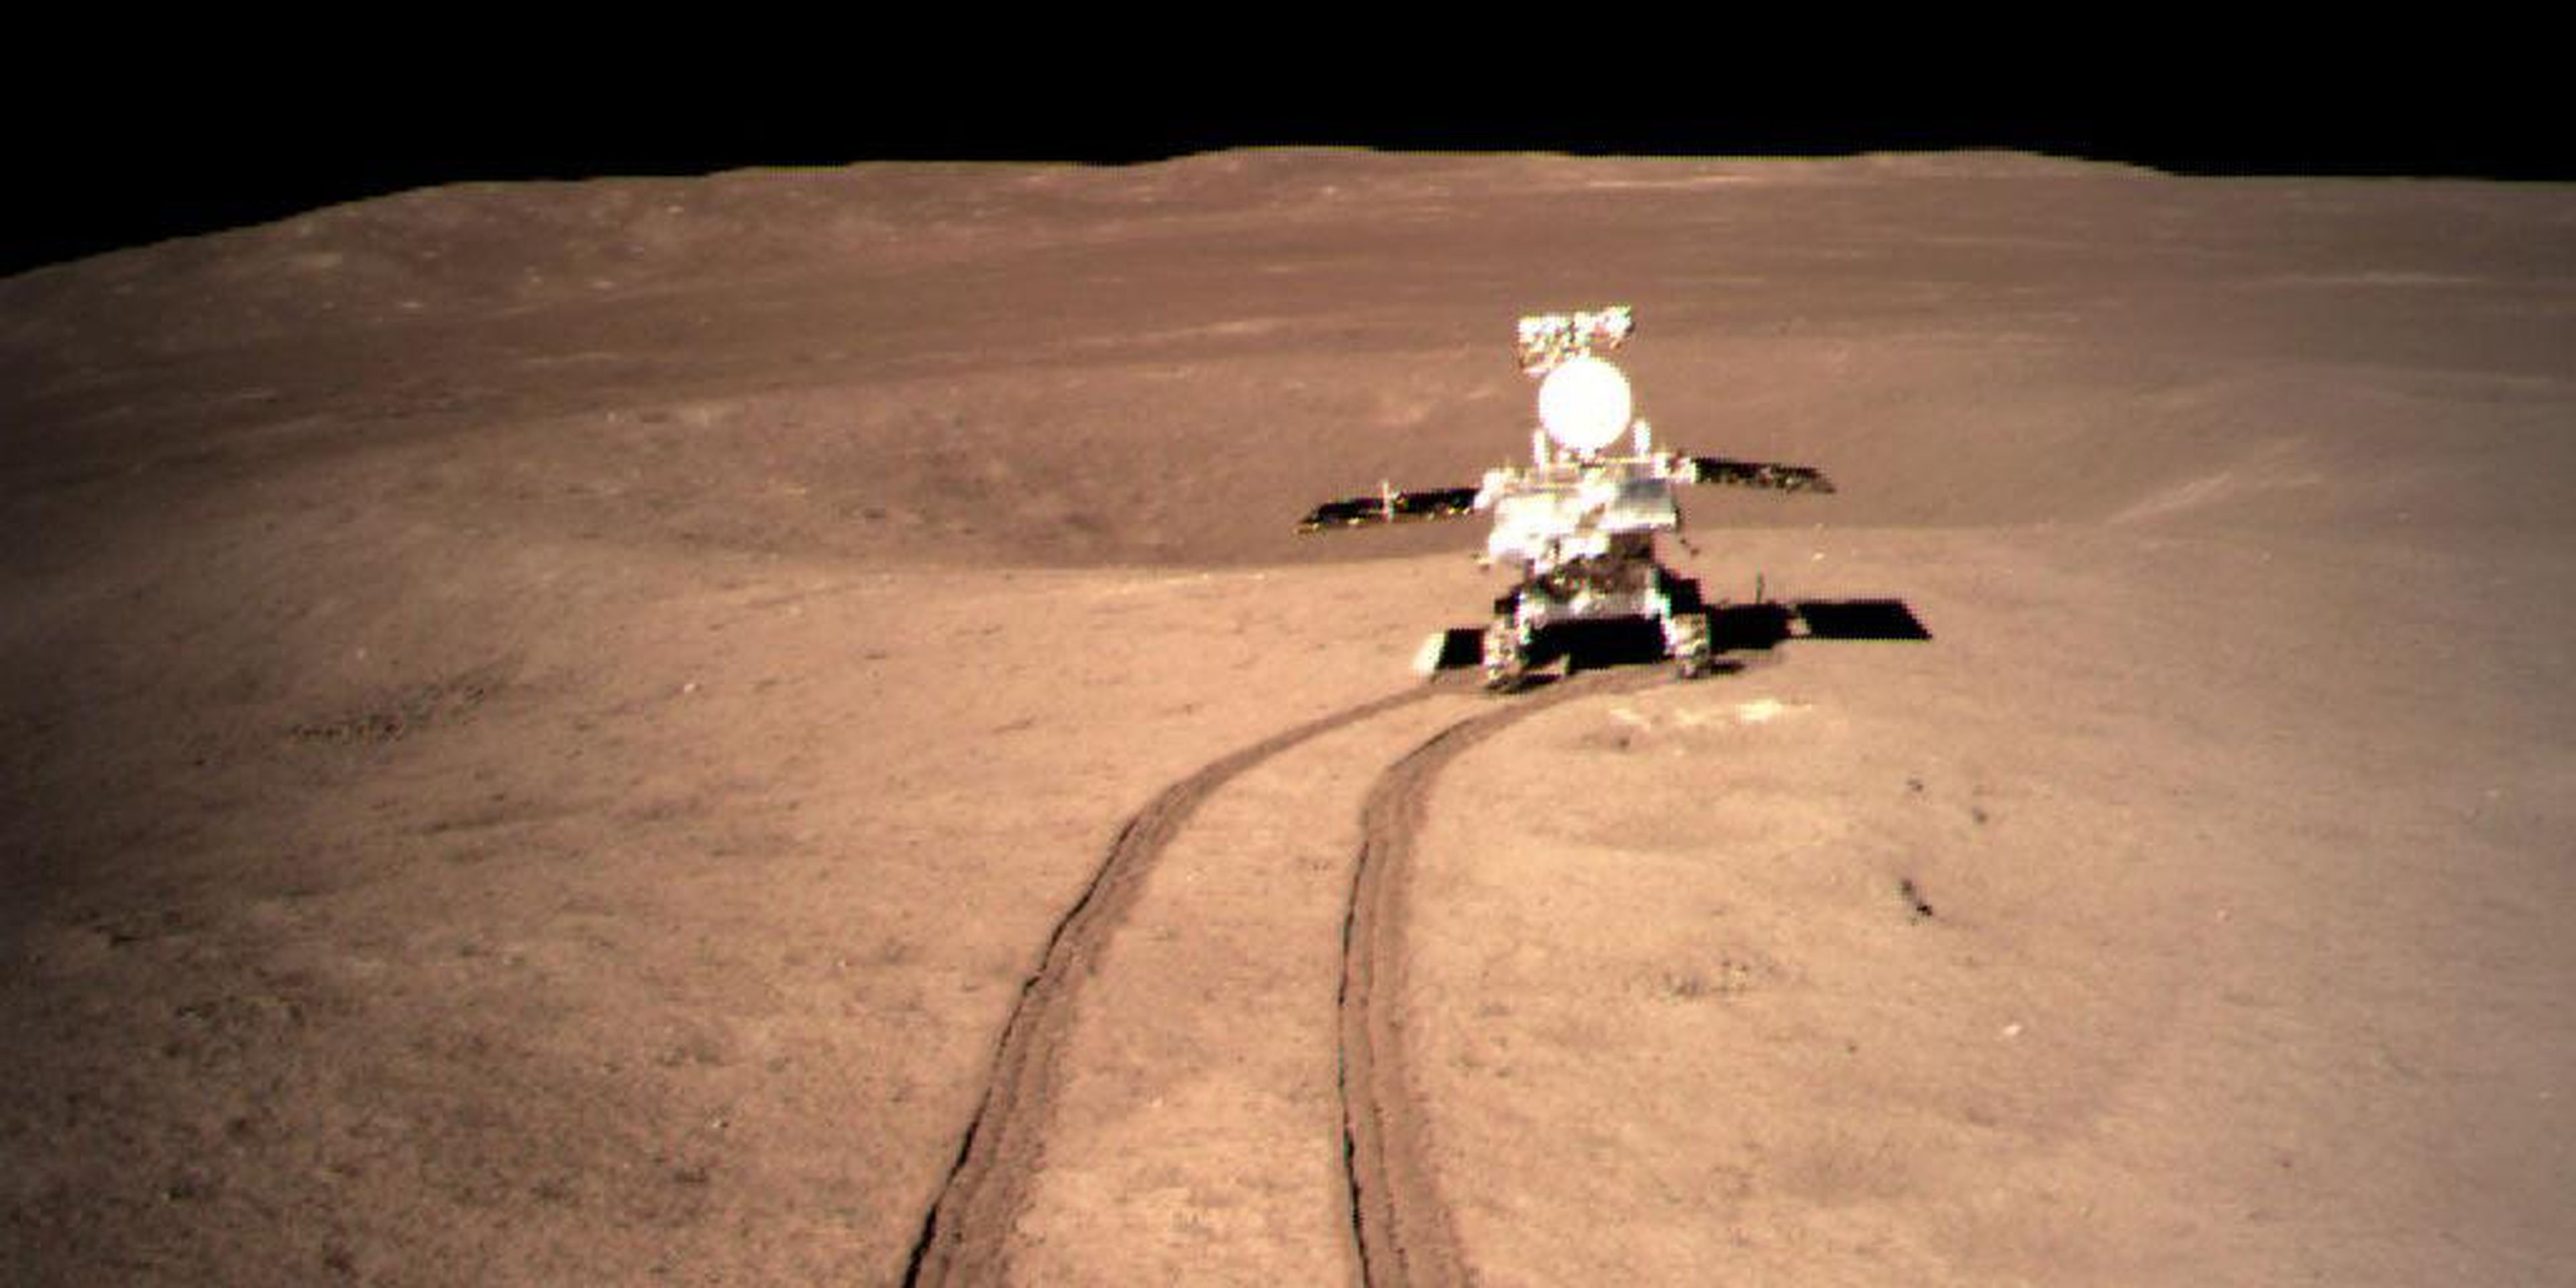 Foto proporcionada por la Administración Nacional del Espacio de China (CNSA) el 4 de enero de 2019 muestra la imagen de Yutu-2, el rover lunar de China, en la ubicación A preestablecida en la superficie del lado lejano de la luna.